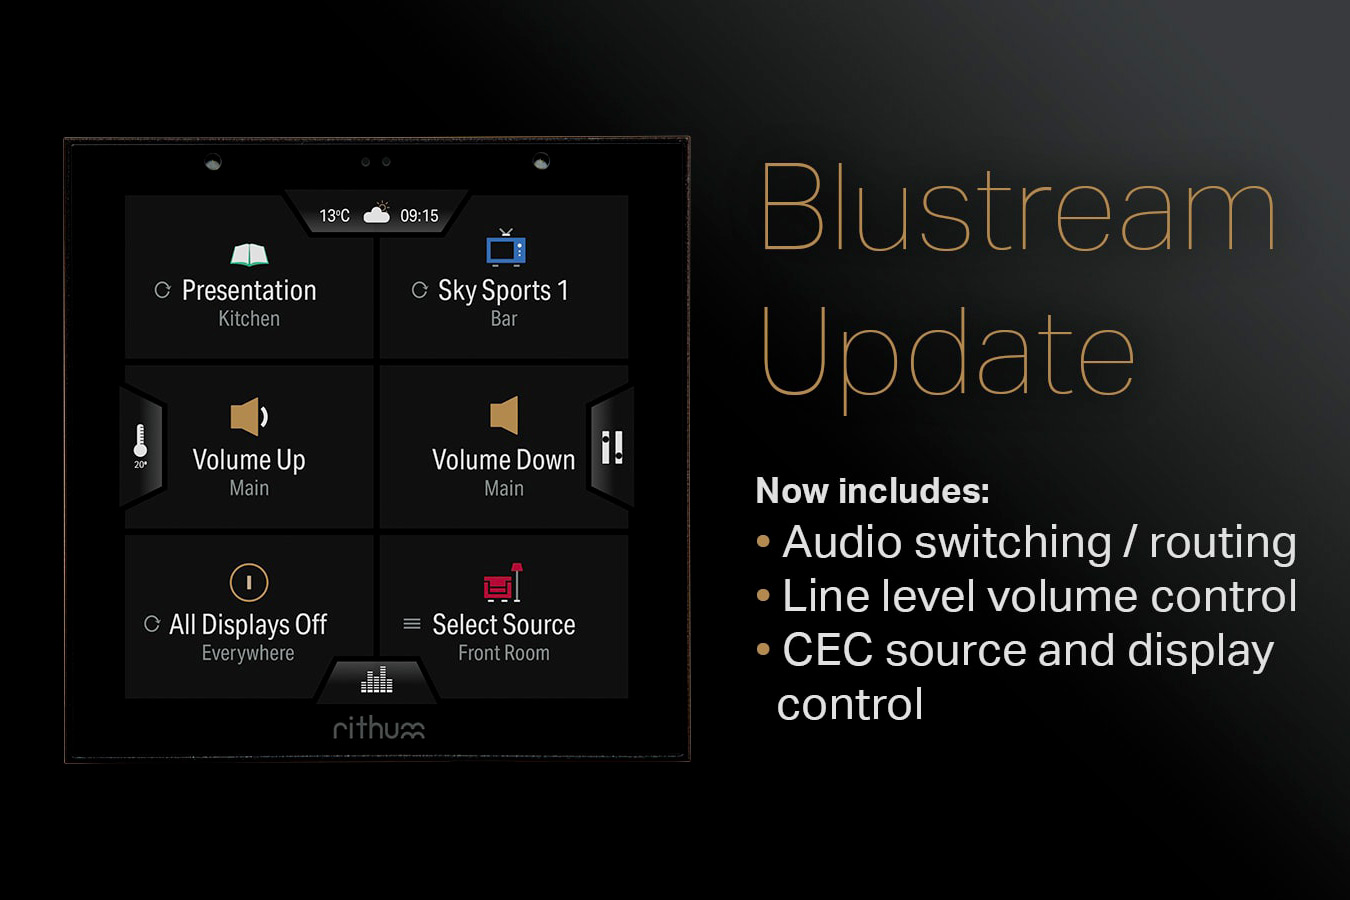 Rithum Switch pilote aussi le multiroom vidéo : mise à jour du plugin Blustream